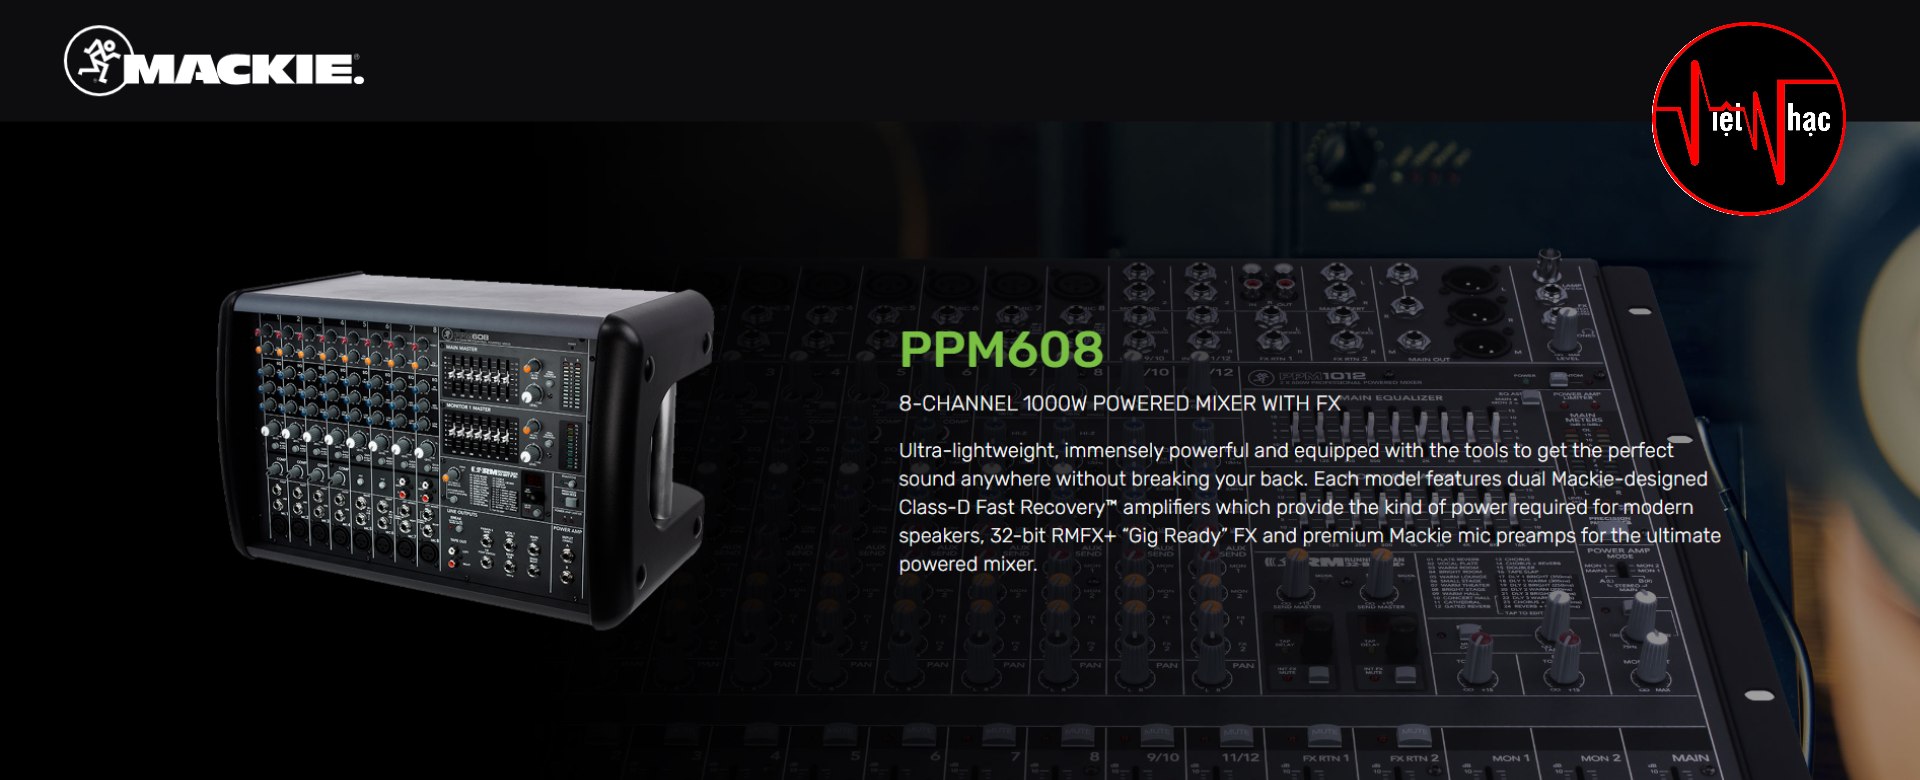 Mixer Liền Công Suất Mackie PPM608 8-Channel 1,000Watt Powered Mixer